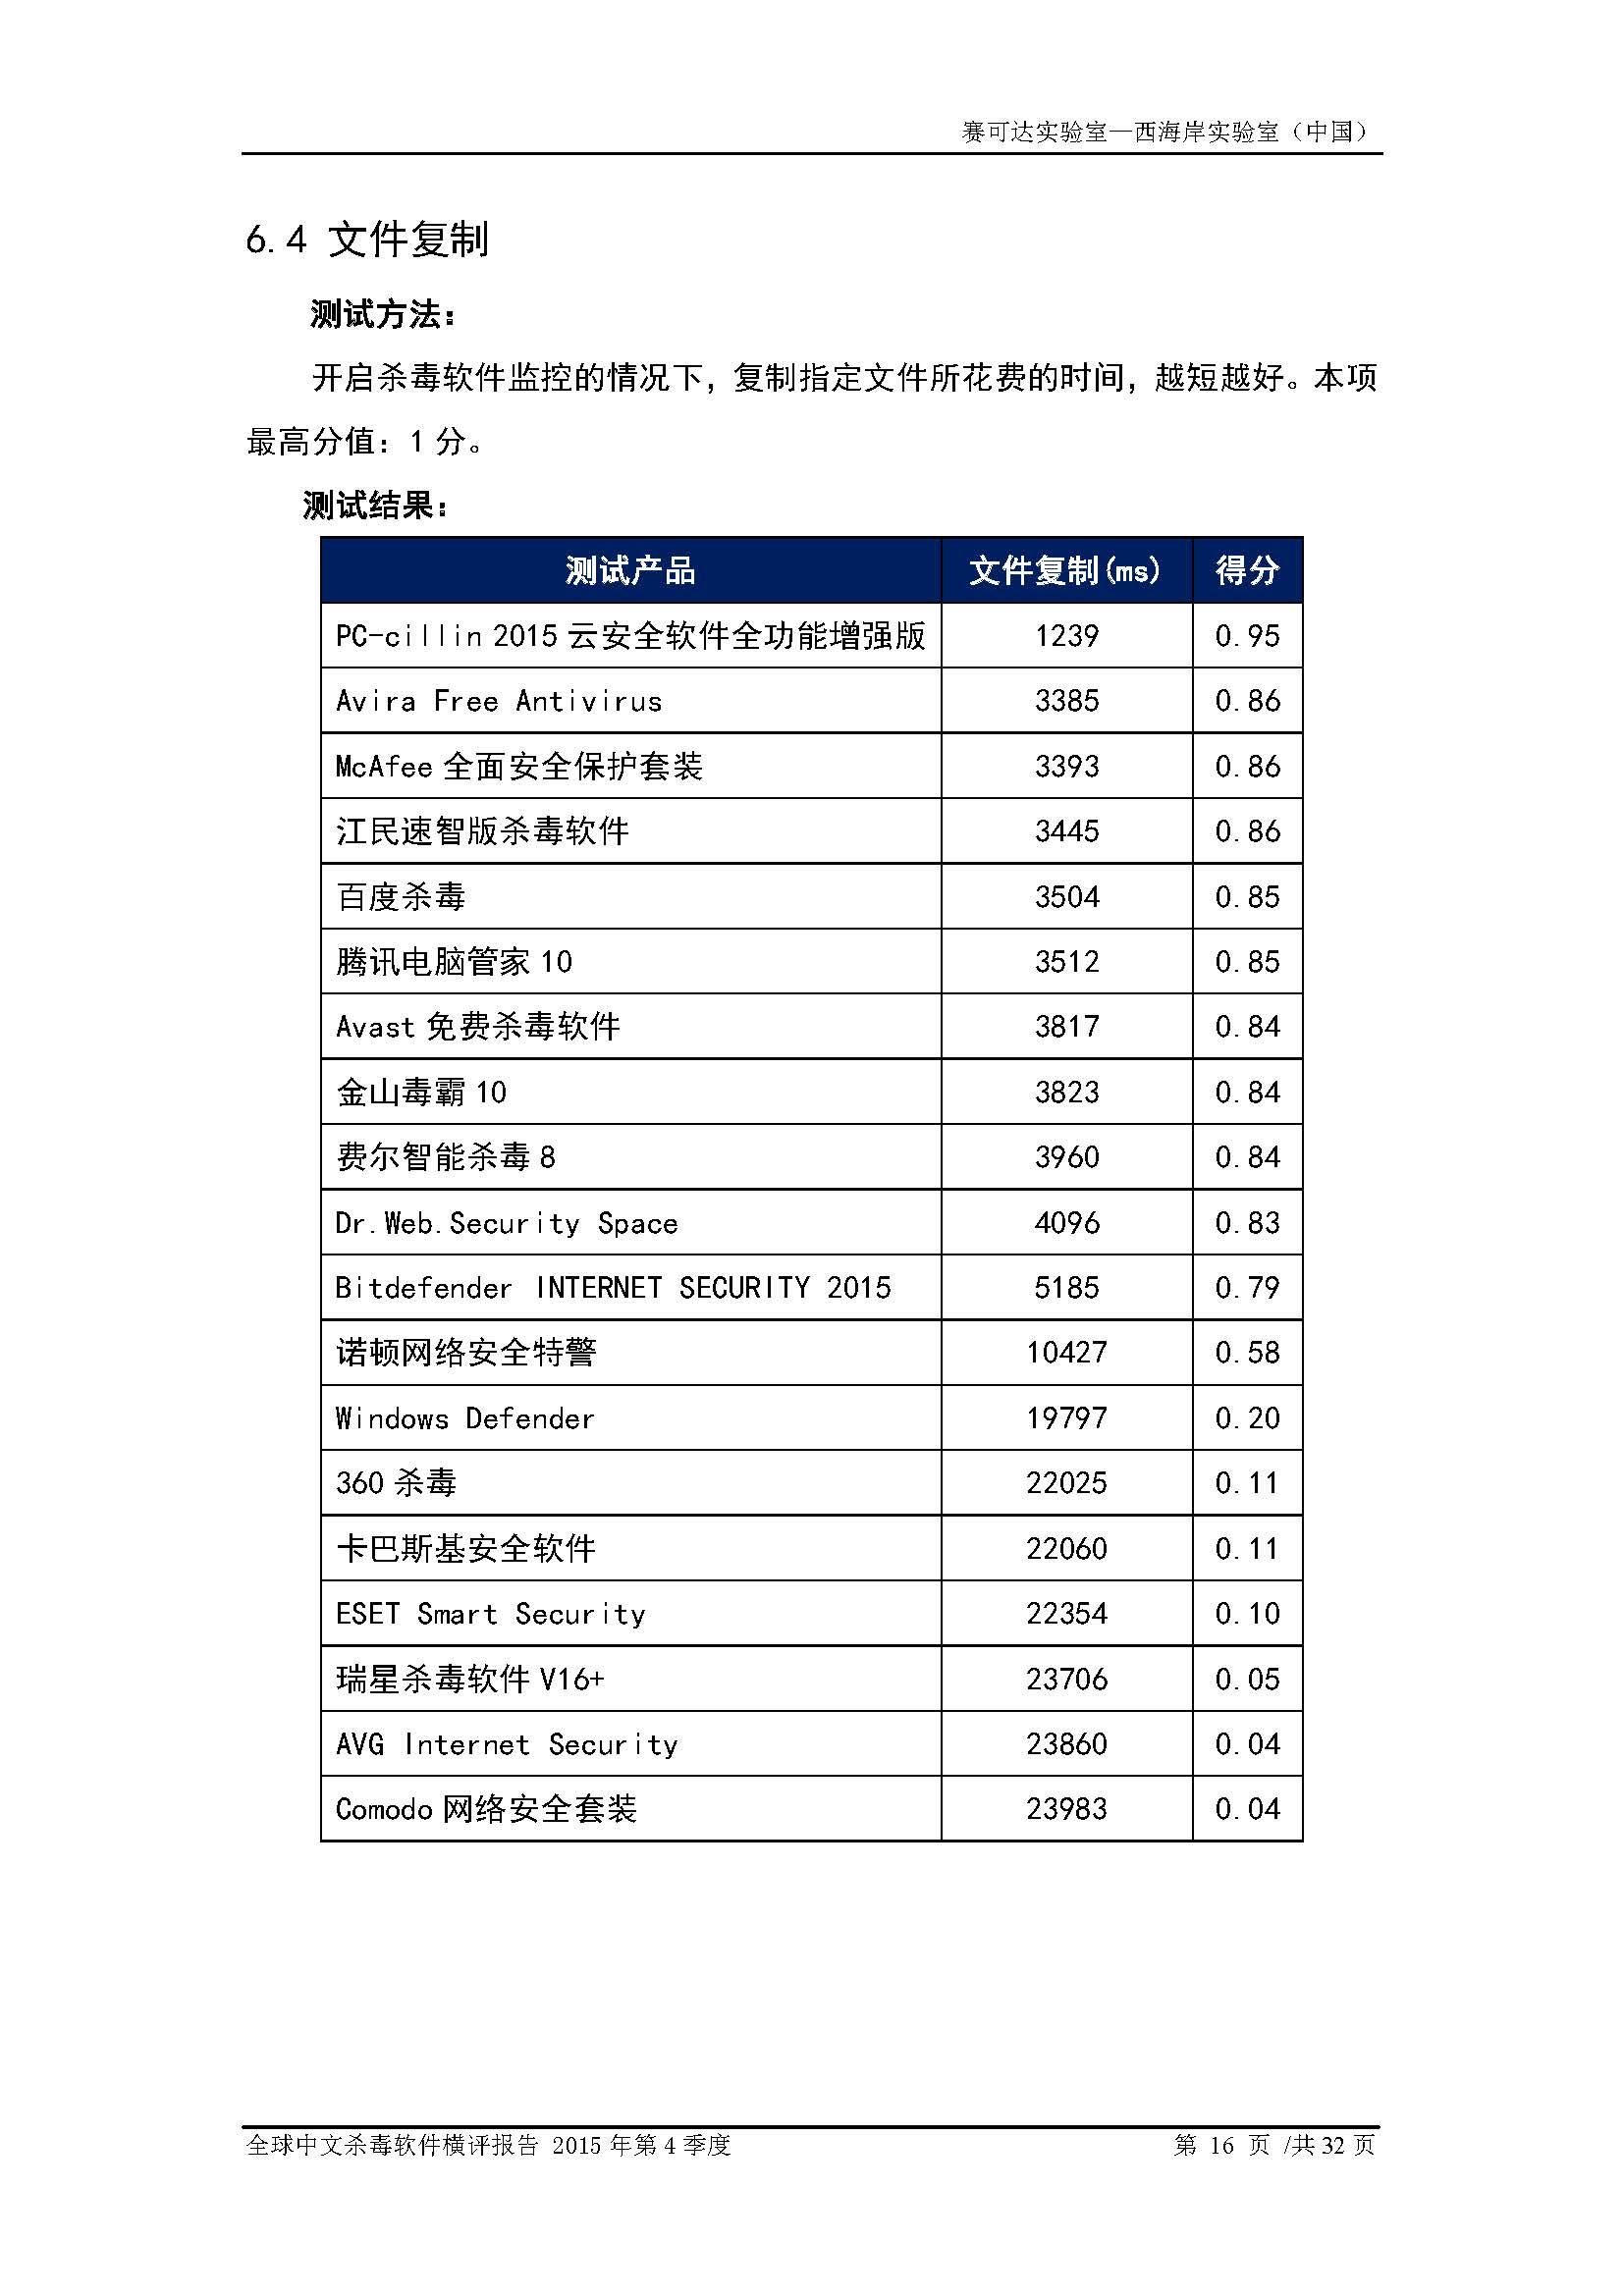 中文PC杀毒软件横评测试报告- Windows 8.1【中文版】.pdf (_Page_18.jpg